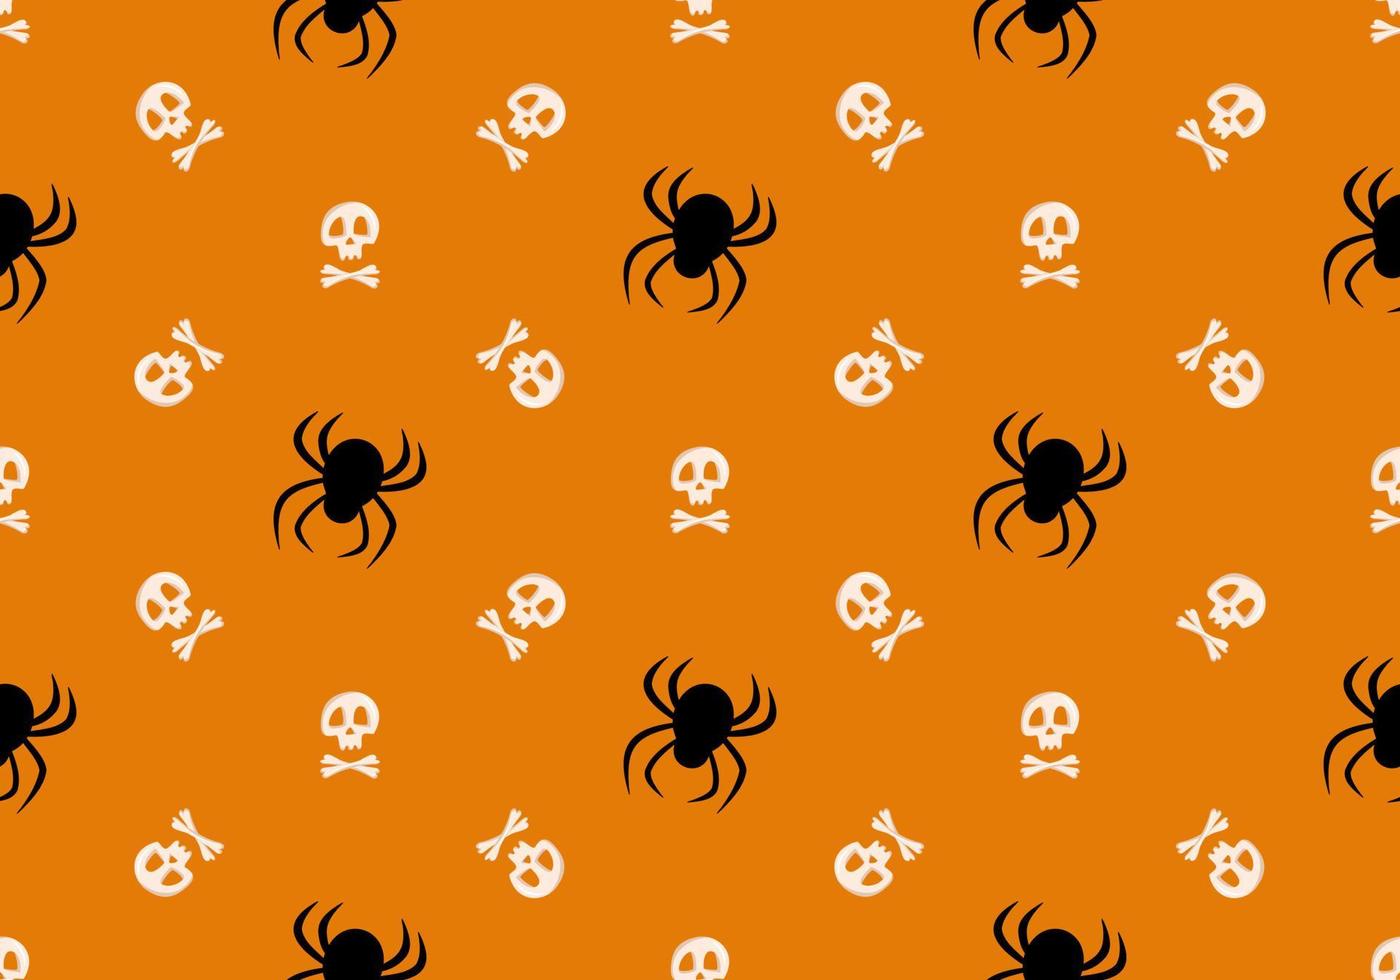 ljusa sömlösa mönster med skalle, korsade ben och spindlar på orange bakgrund. modetryck för barnfest, semester, halloween, textil och design vektor